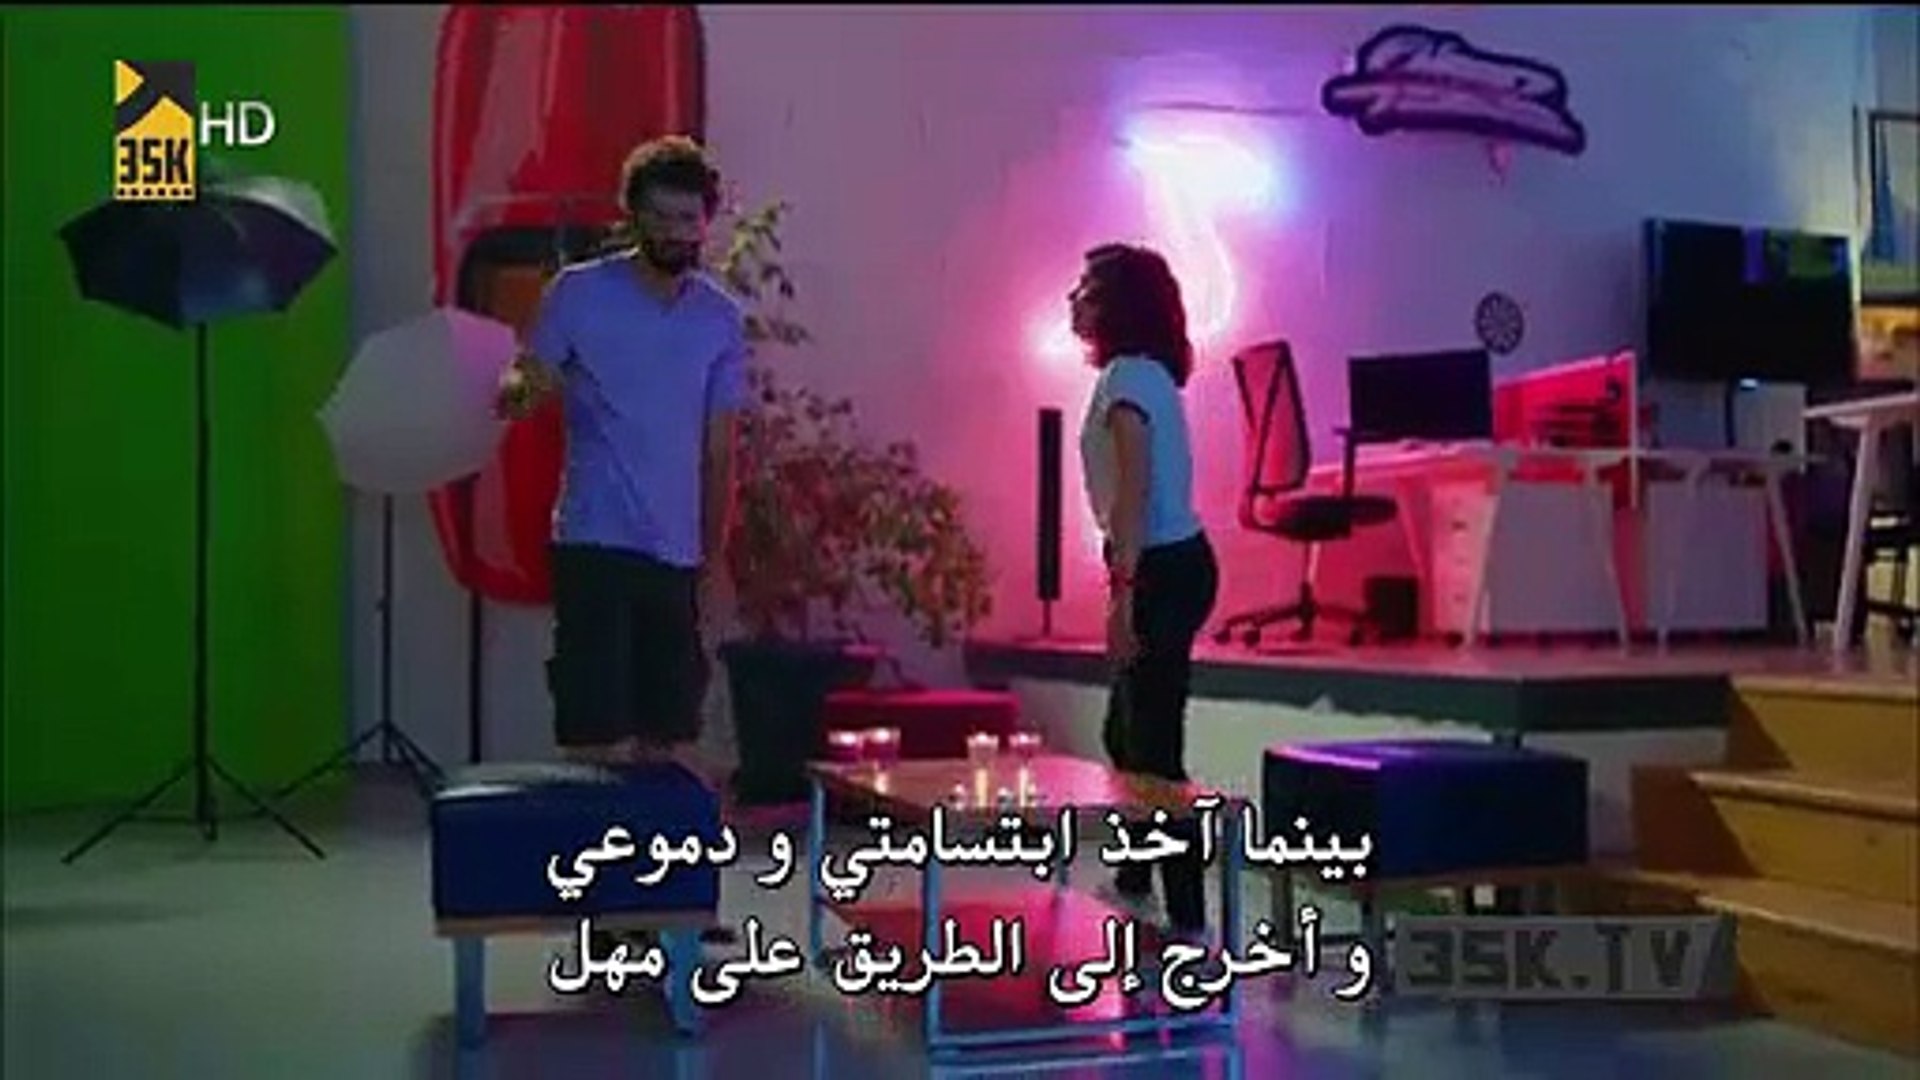 مسلسل هل يحبني الحلقة 9 القسم (1) مترجم للعربية - فيديو Dailymotion